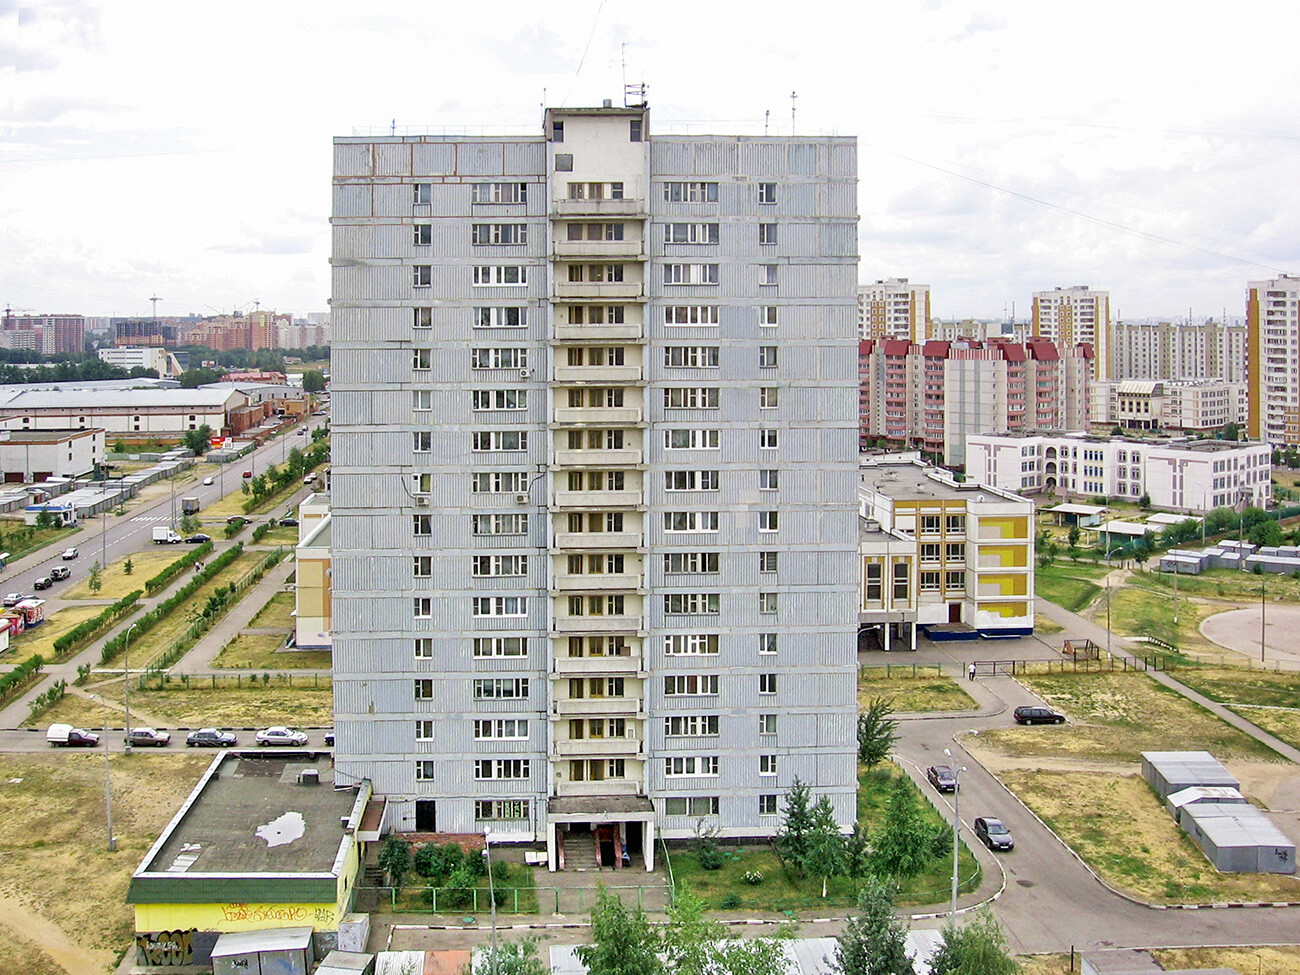 Edificio resideniziale della serie II-68, una tipica brezhnevka